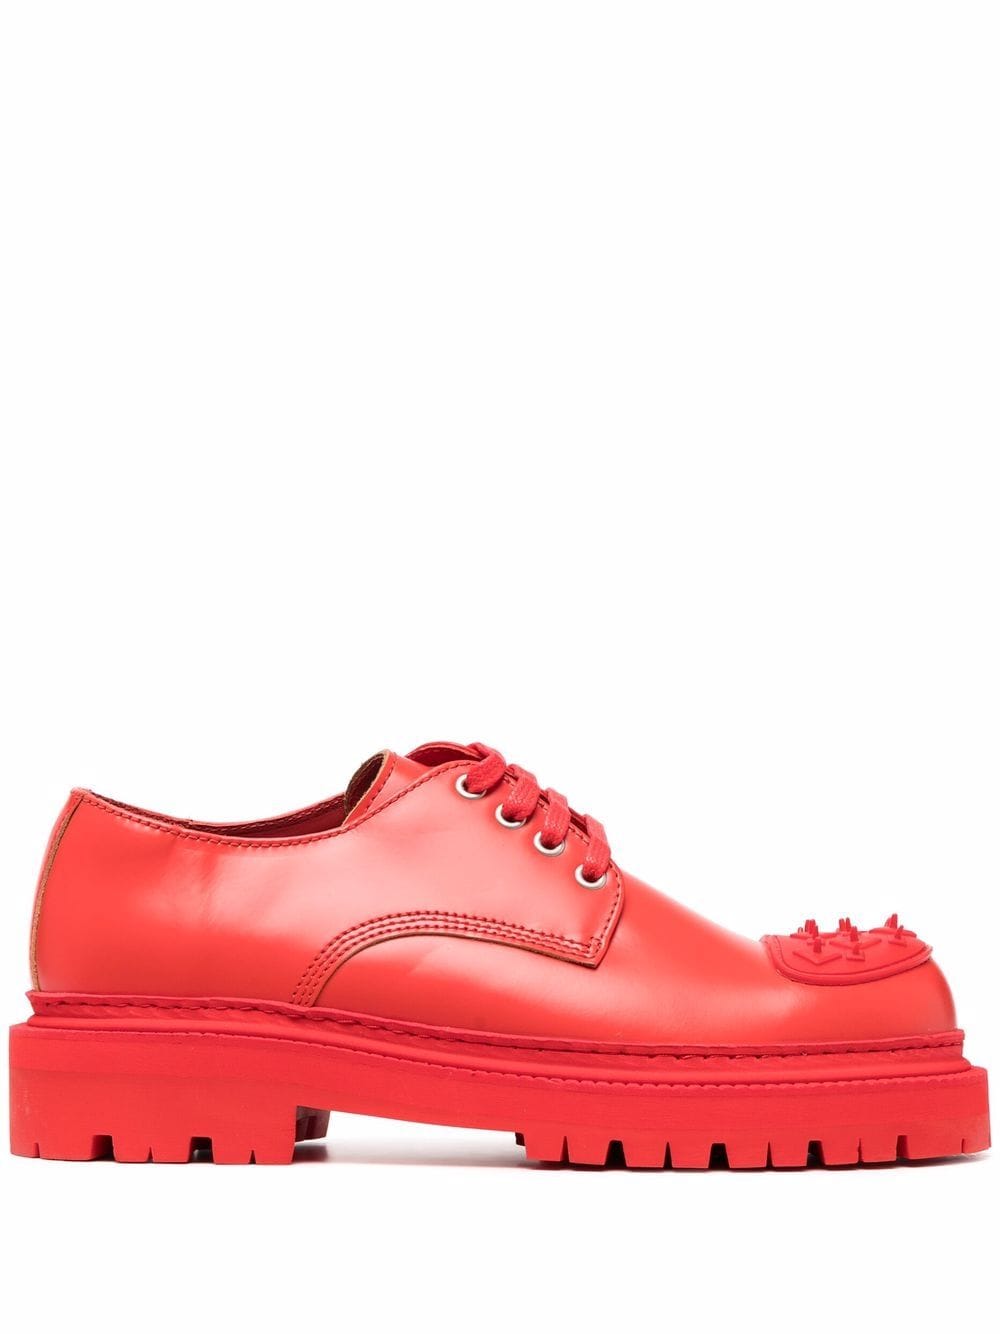 CamperLab Eki leather Derby shoes - Red von CamperLab